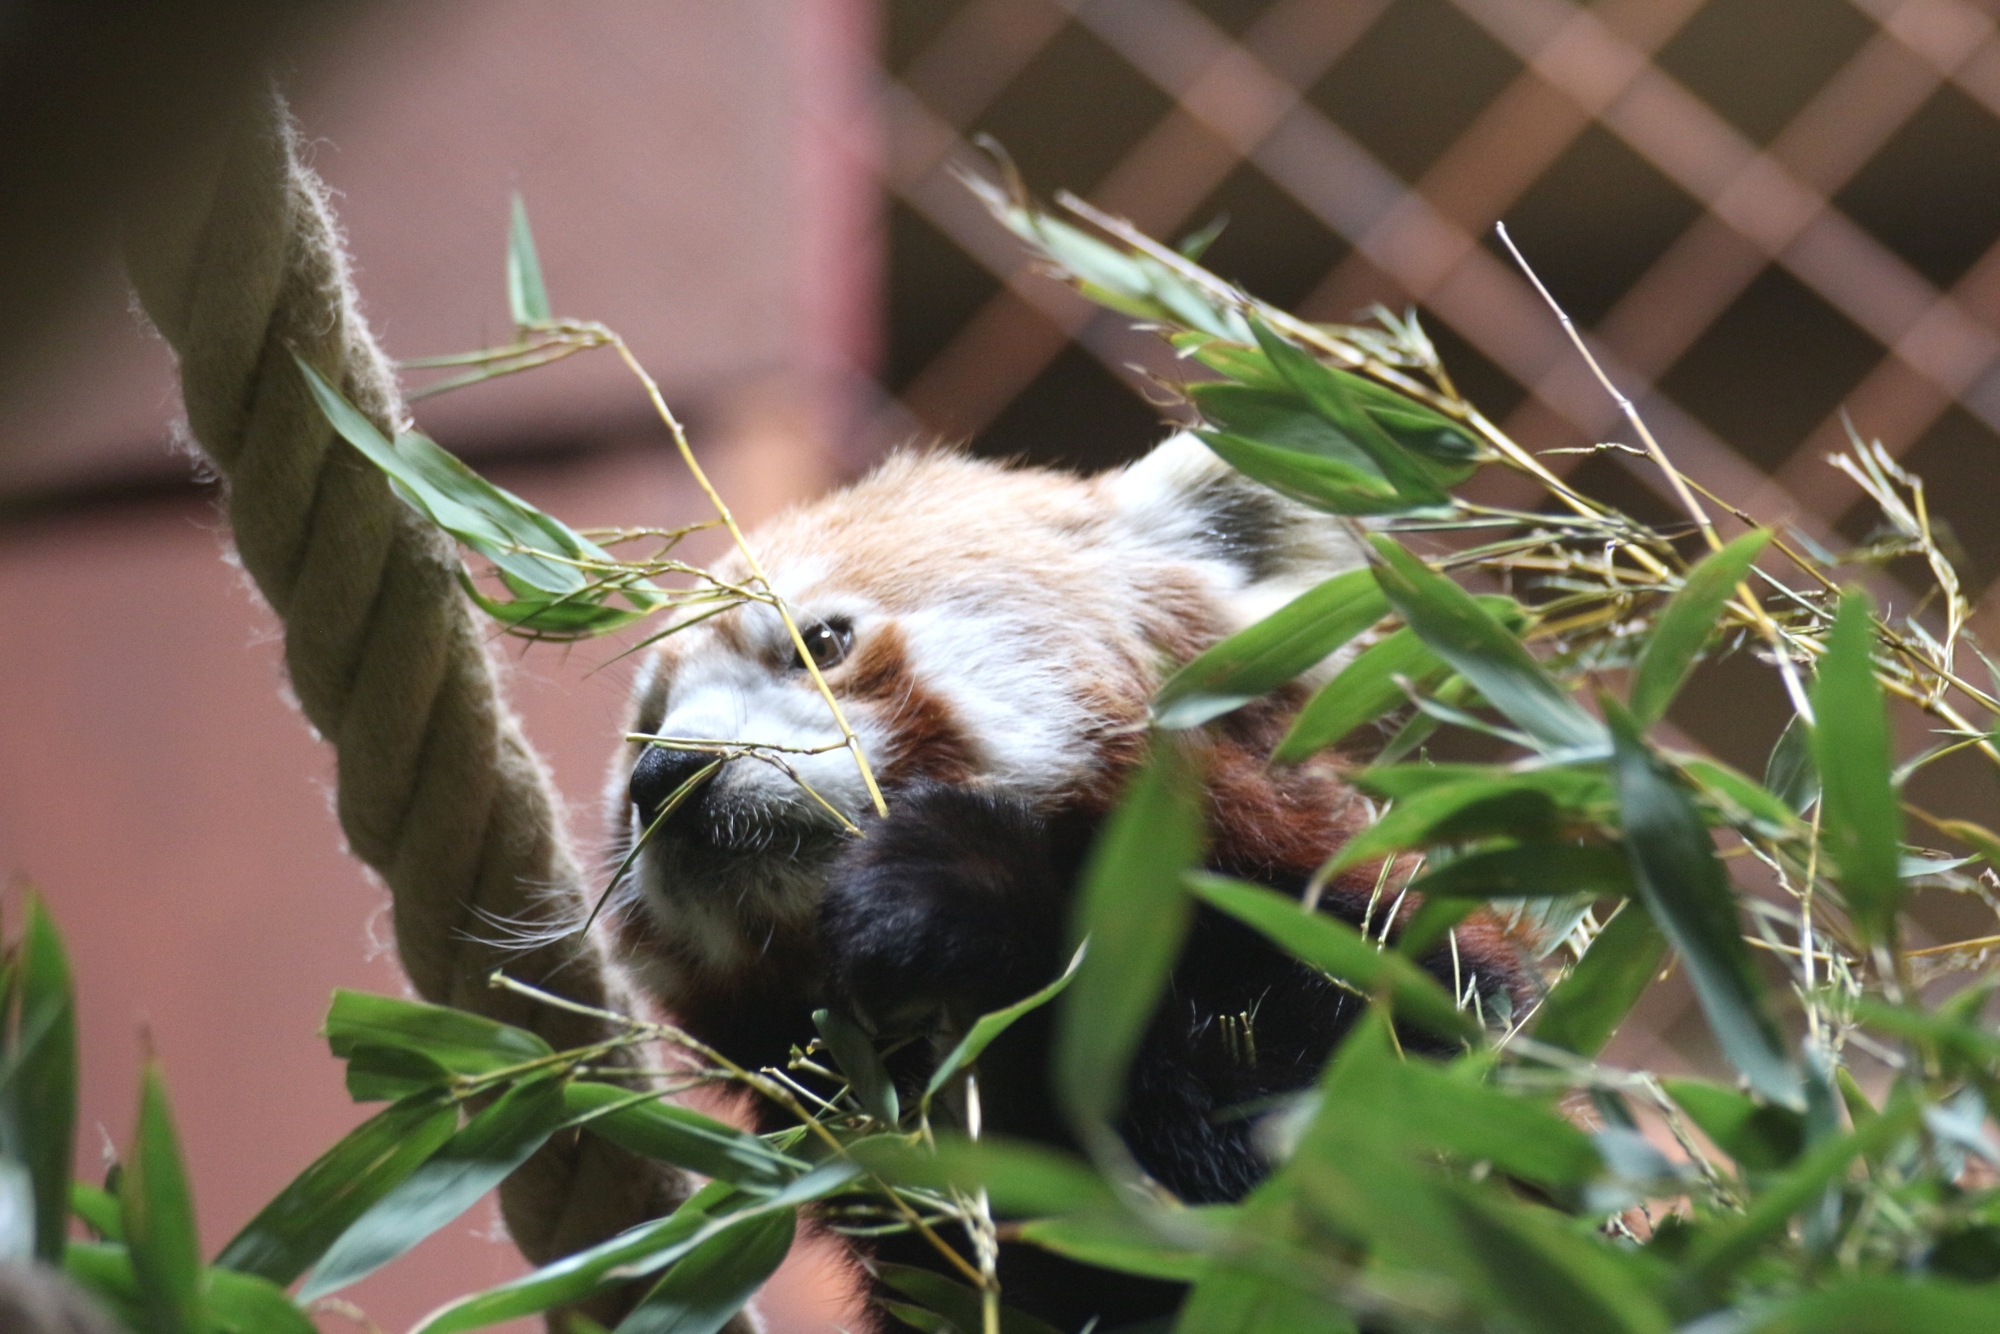 https://www.zoo-osnabrueck.de/fileadmin/dateien/Bilder_fuer_News/Alte_Newsbilder/Zoo-OS-Roter-Panda-Maennchen26062018A.JPG